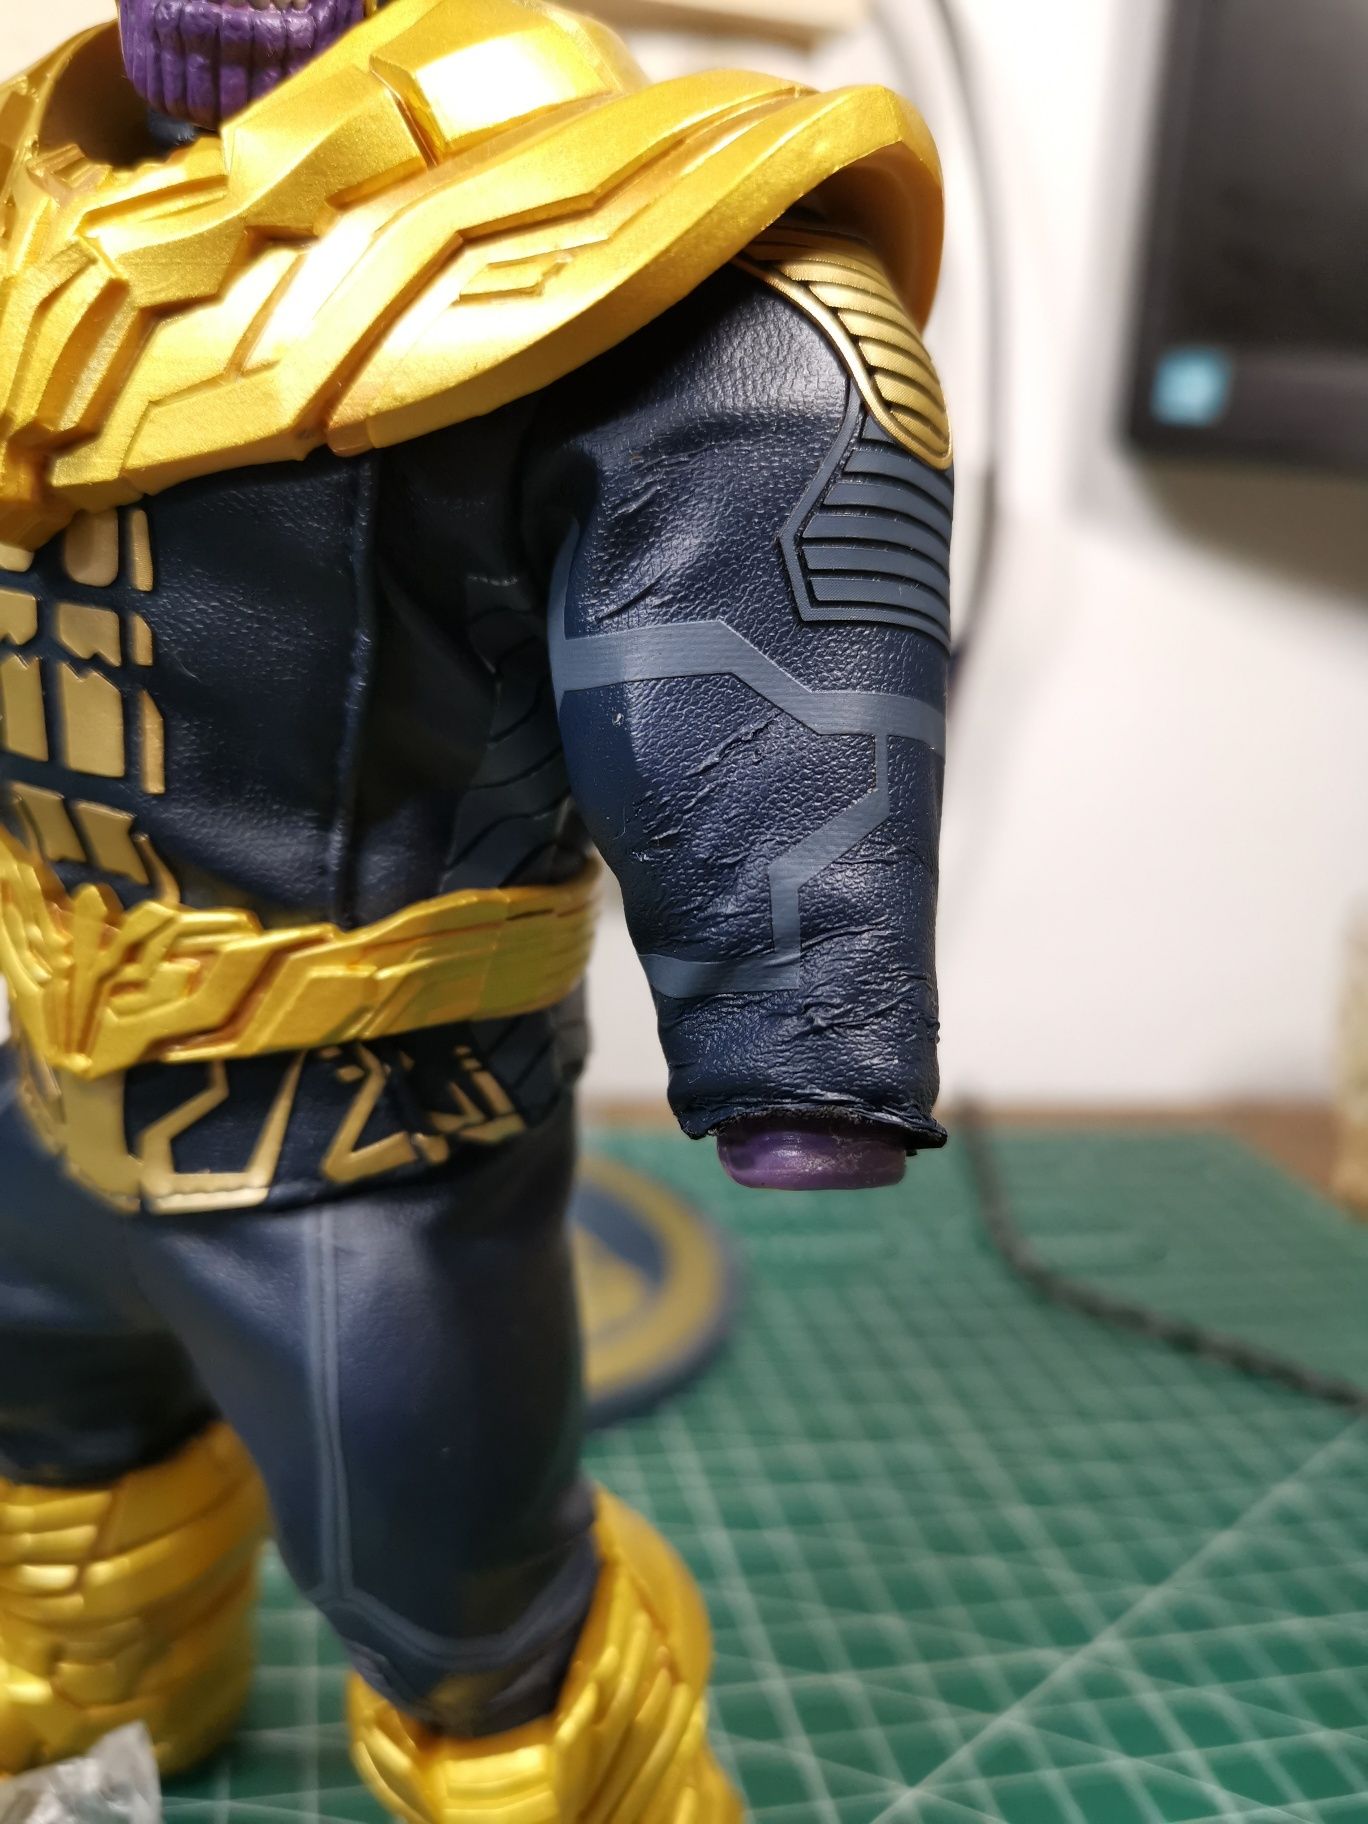 Figurina Articulata Mezco Thanos Marvel